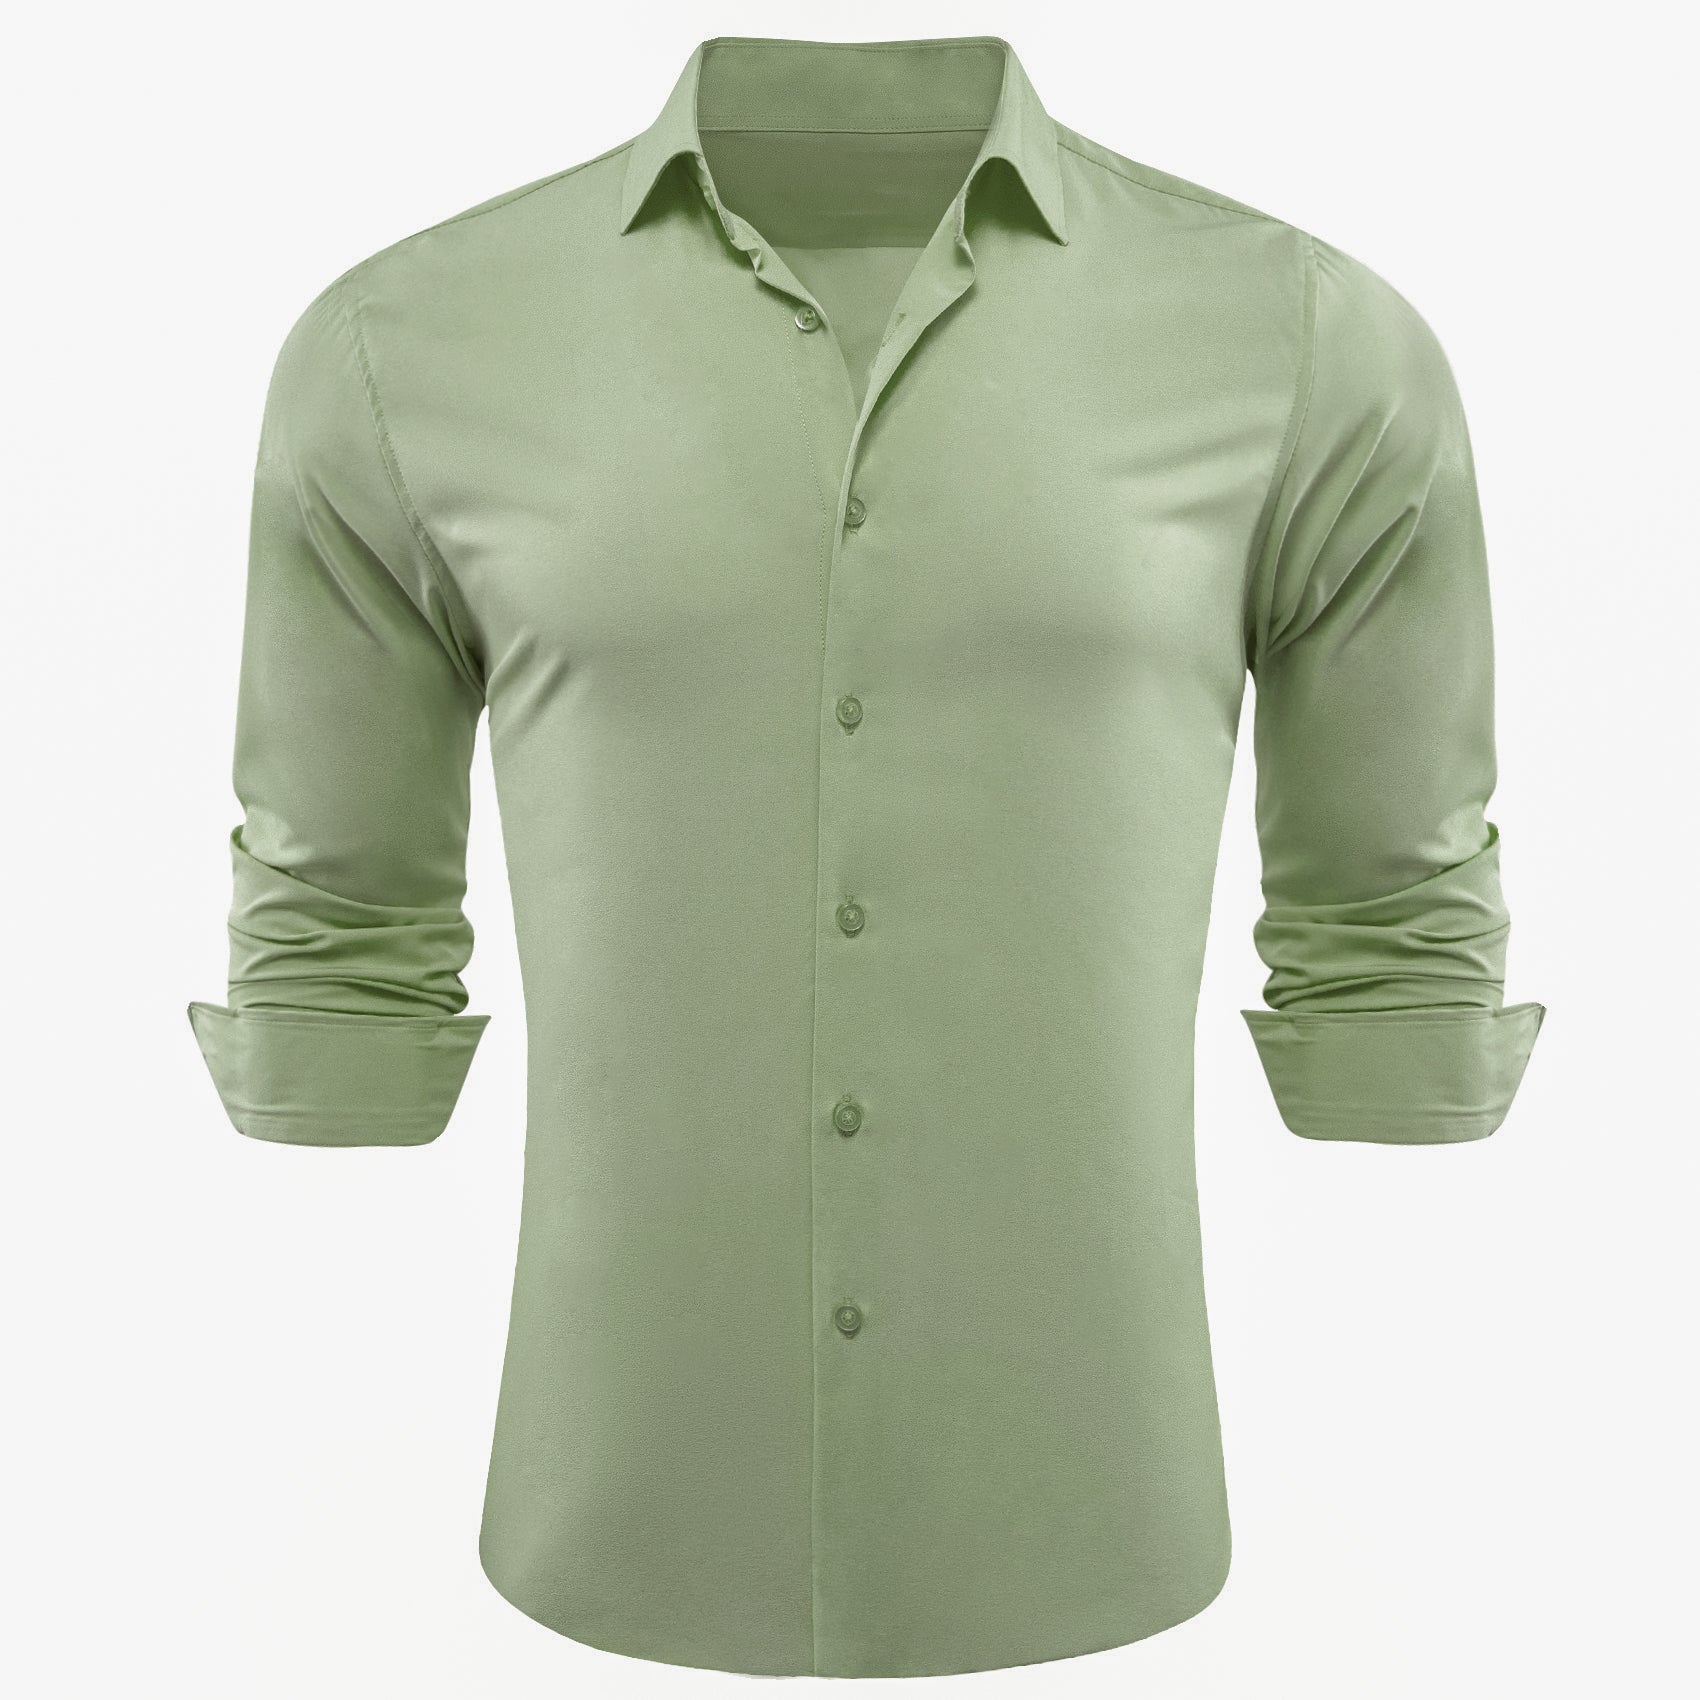 Barry.wang Darkseagreen Solid Silk Shirt